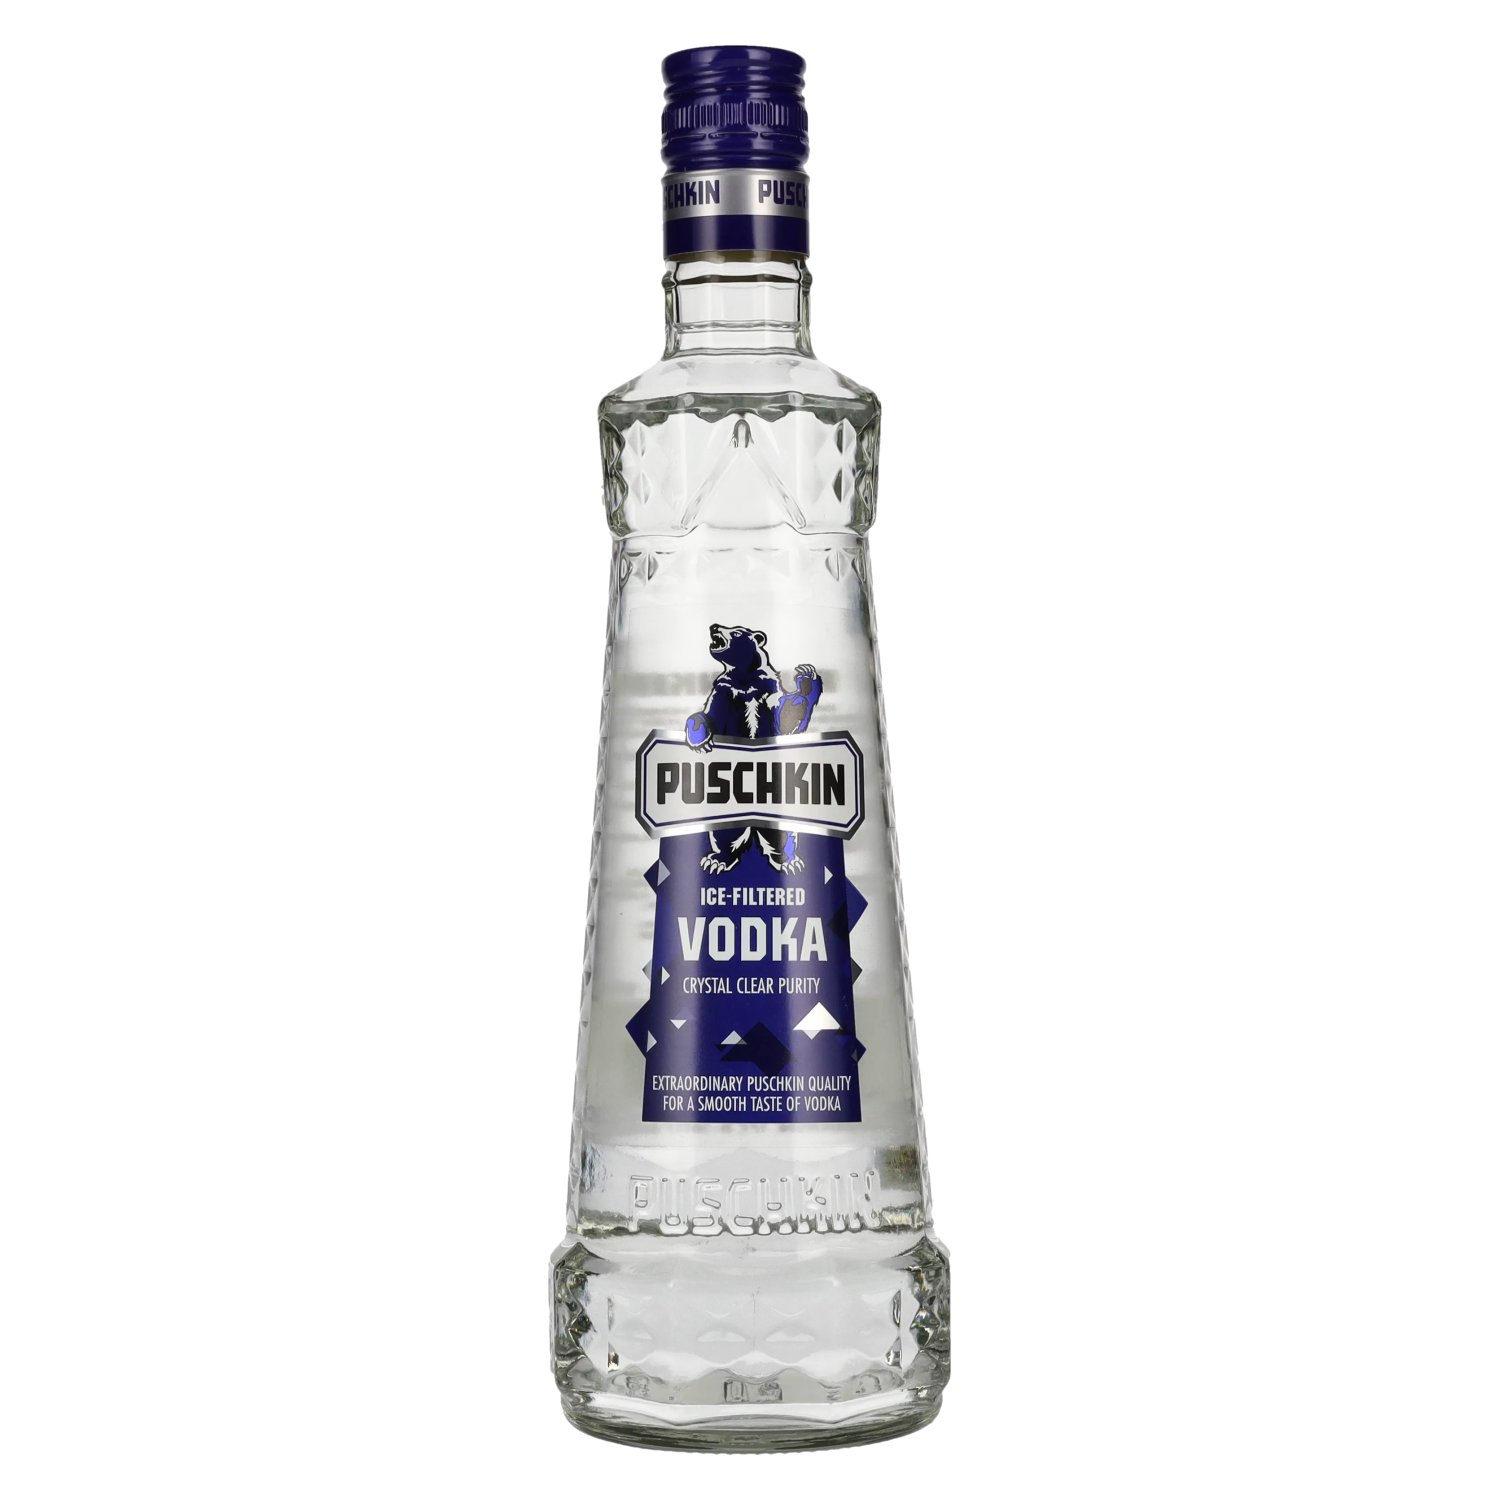 Puschkin 37,5% - 0,7l Vodka Ice-Filtered delicando Vol.